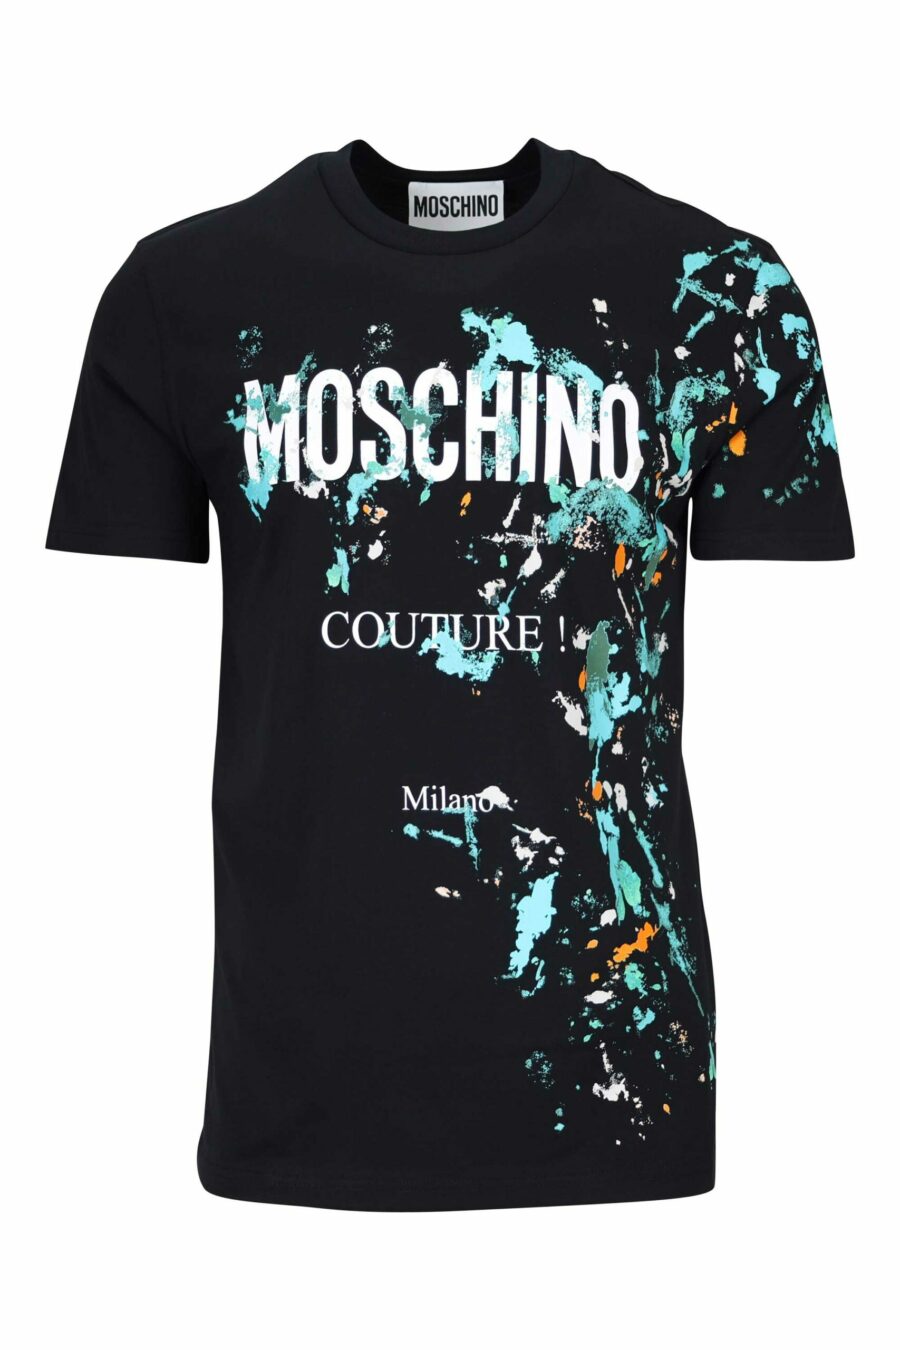 Schwarzes T-Shirt mit Maxilogo "couture milano" mit mehrfarbigem "splash" - 667113391946 skaliert